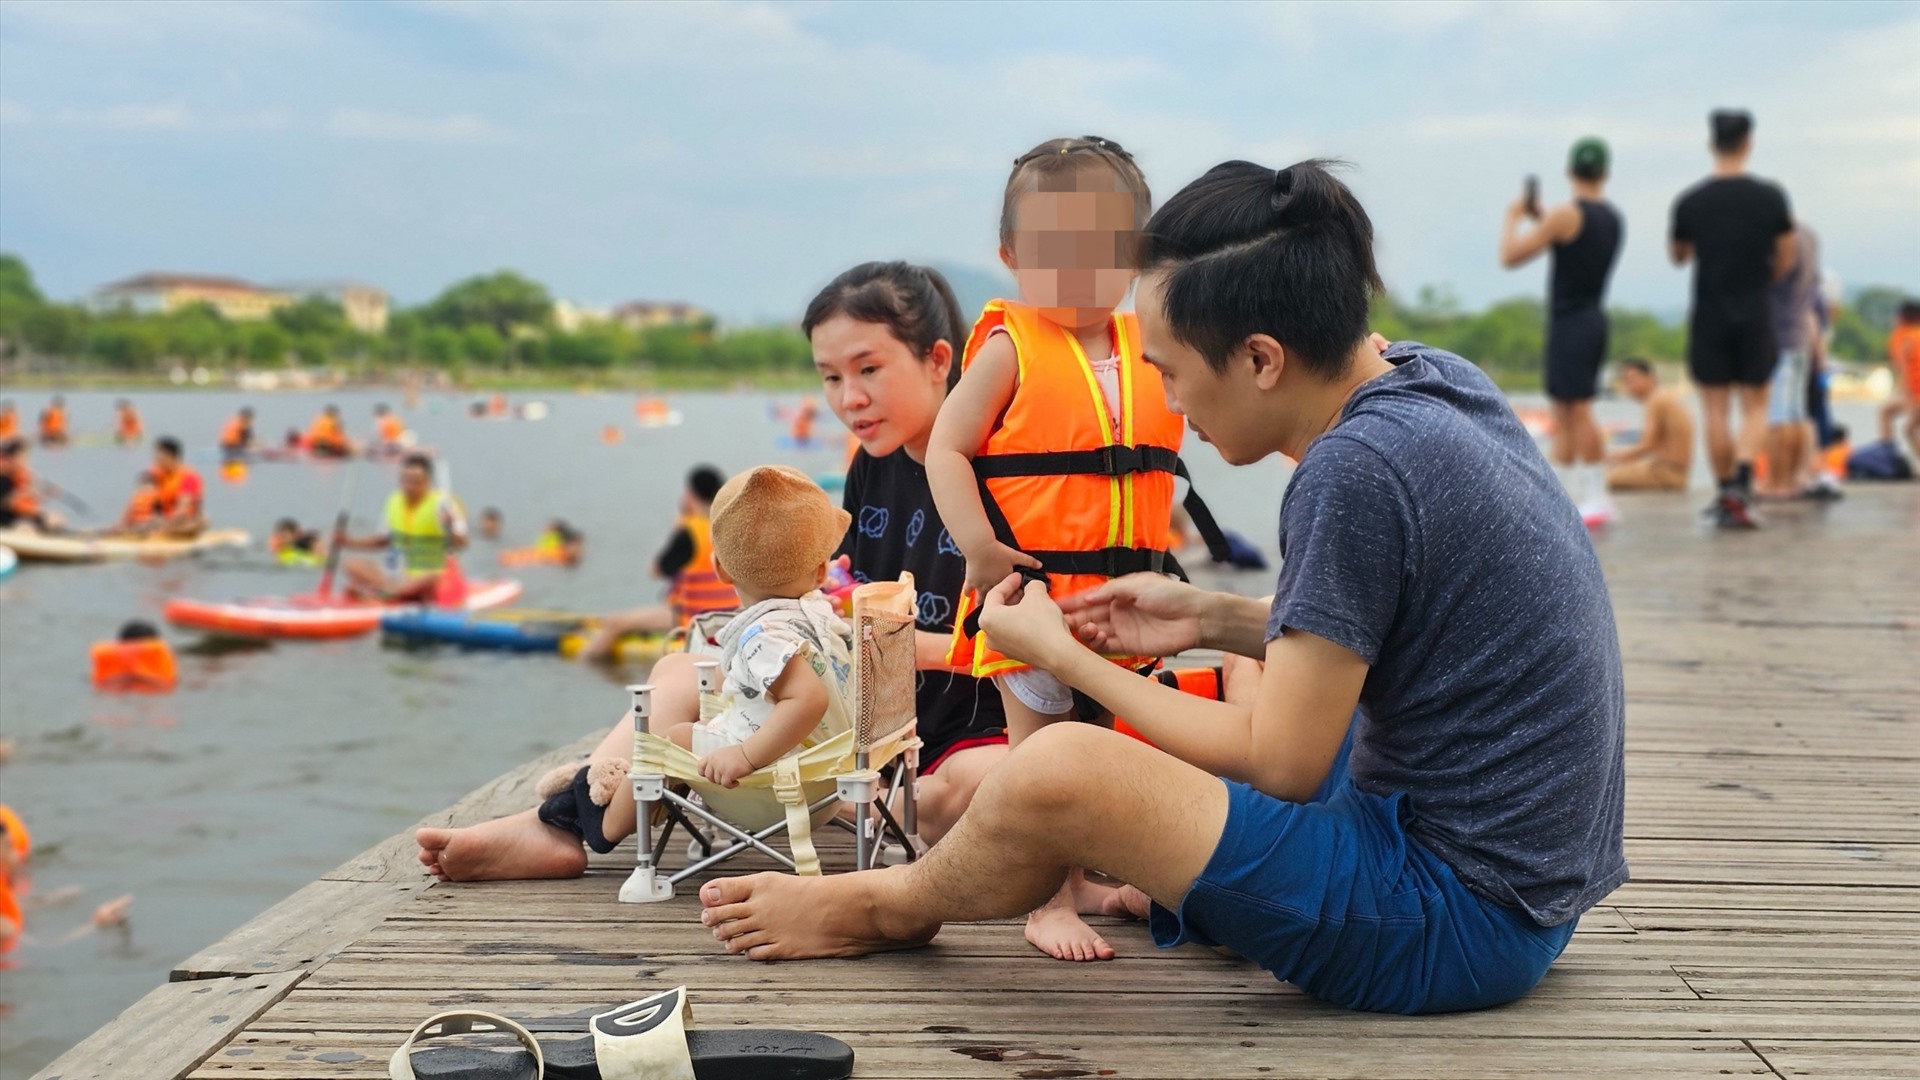 Trên cầu Bán Nguyệt, một gia đình nhỏ đang chuẩn bị áo phao, khởi động trước khi xuống nước.